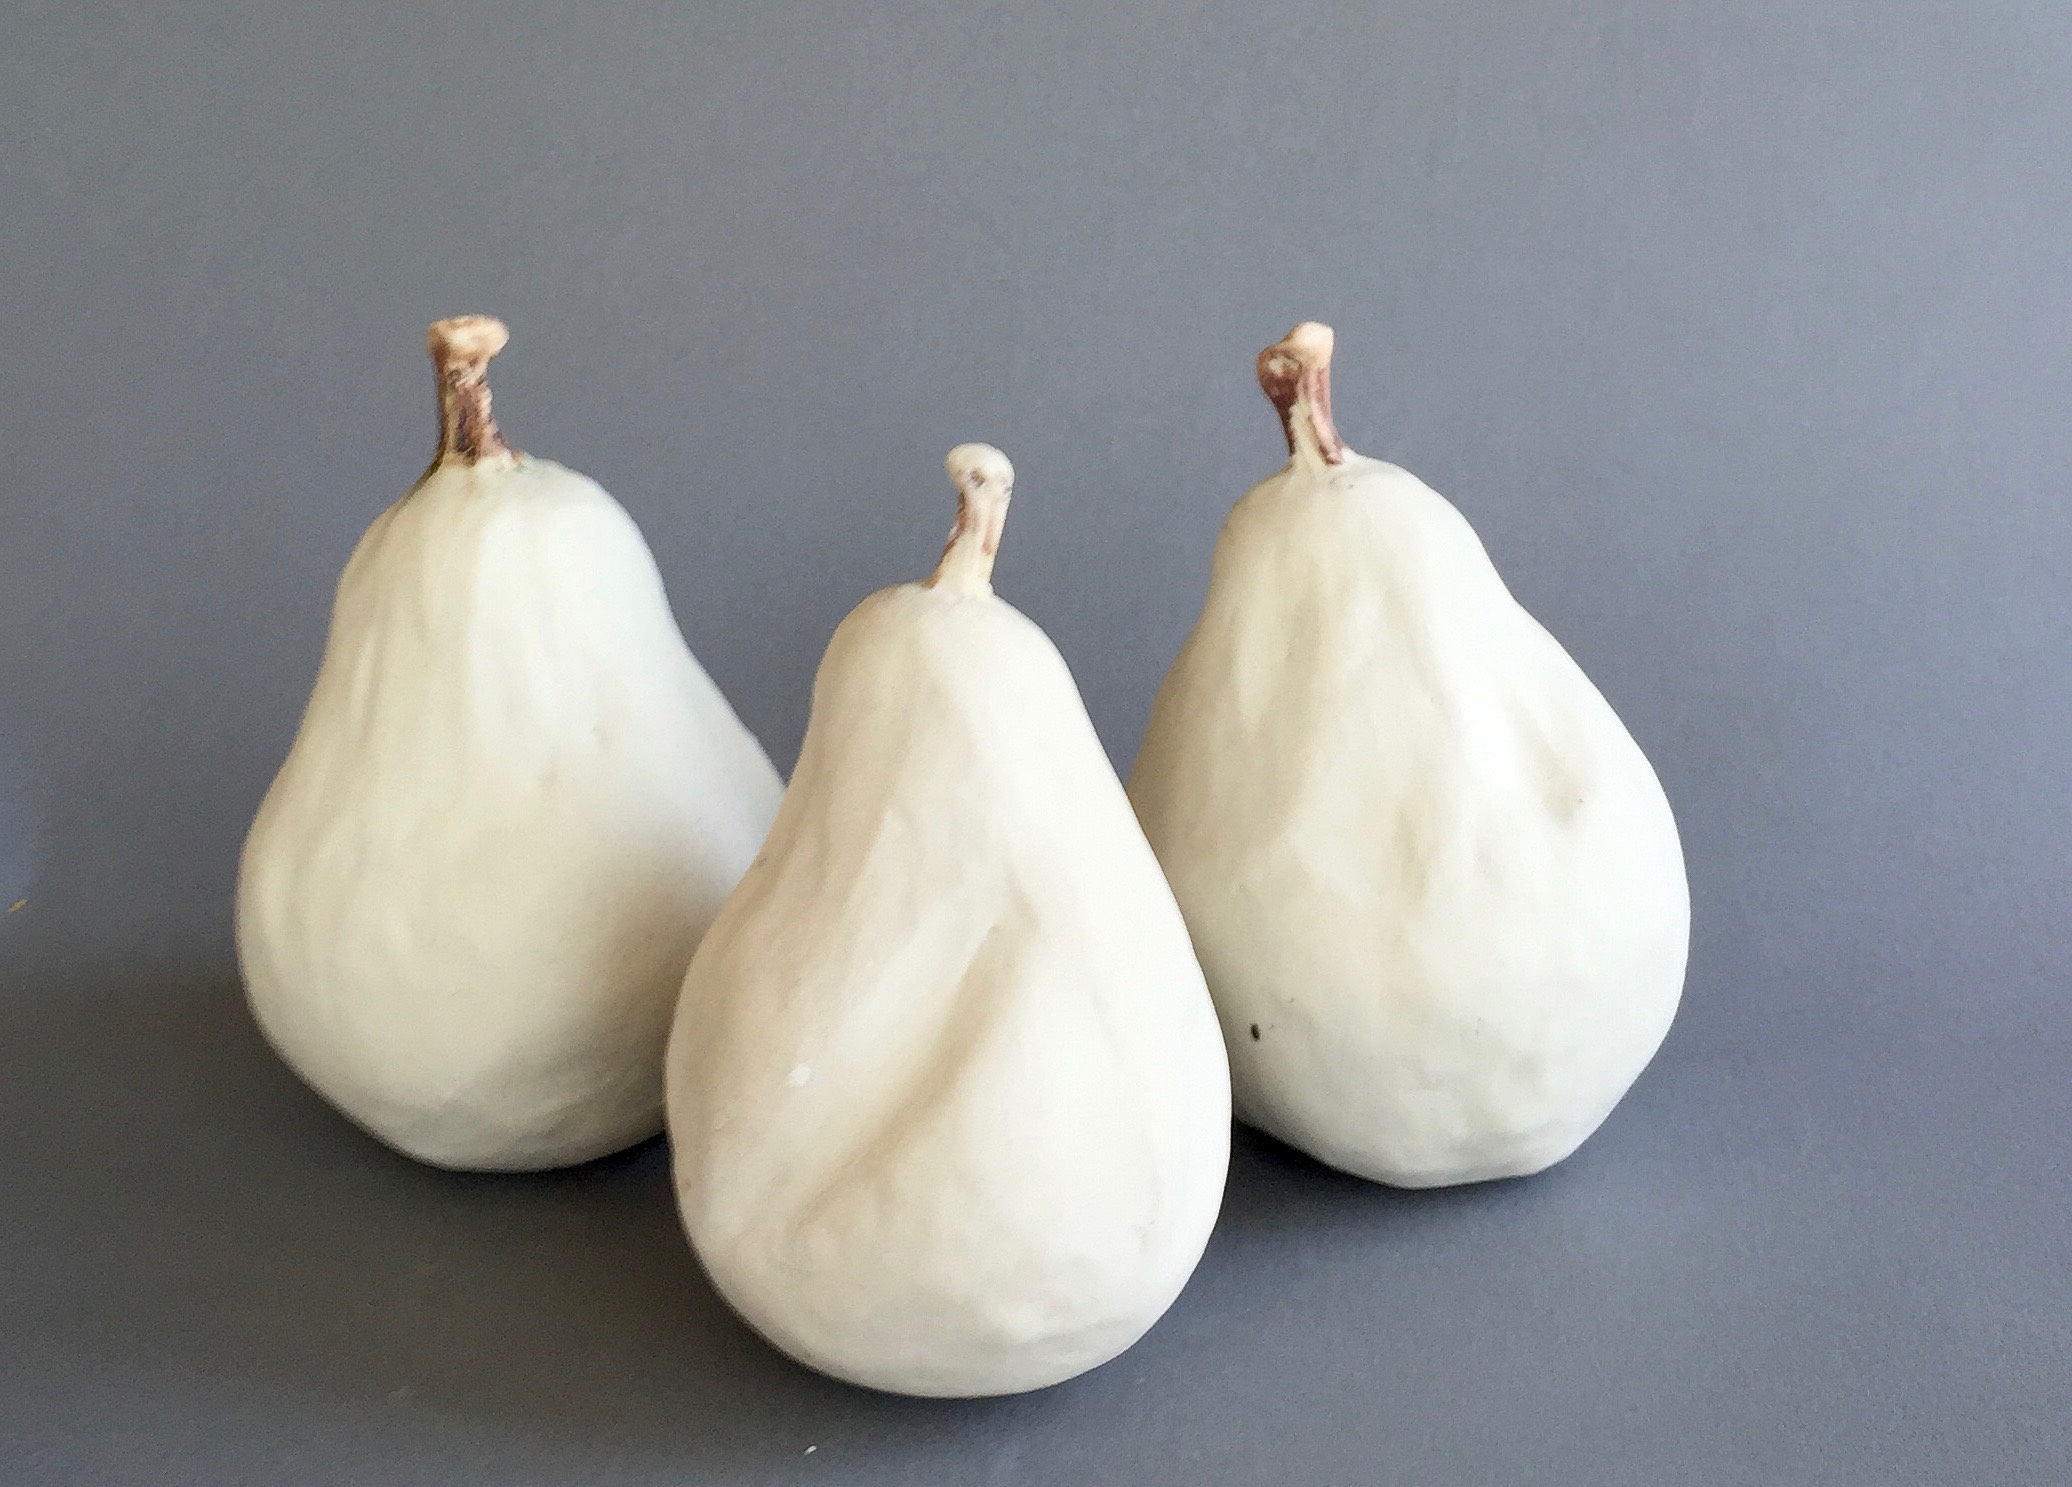 Three White Pears